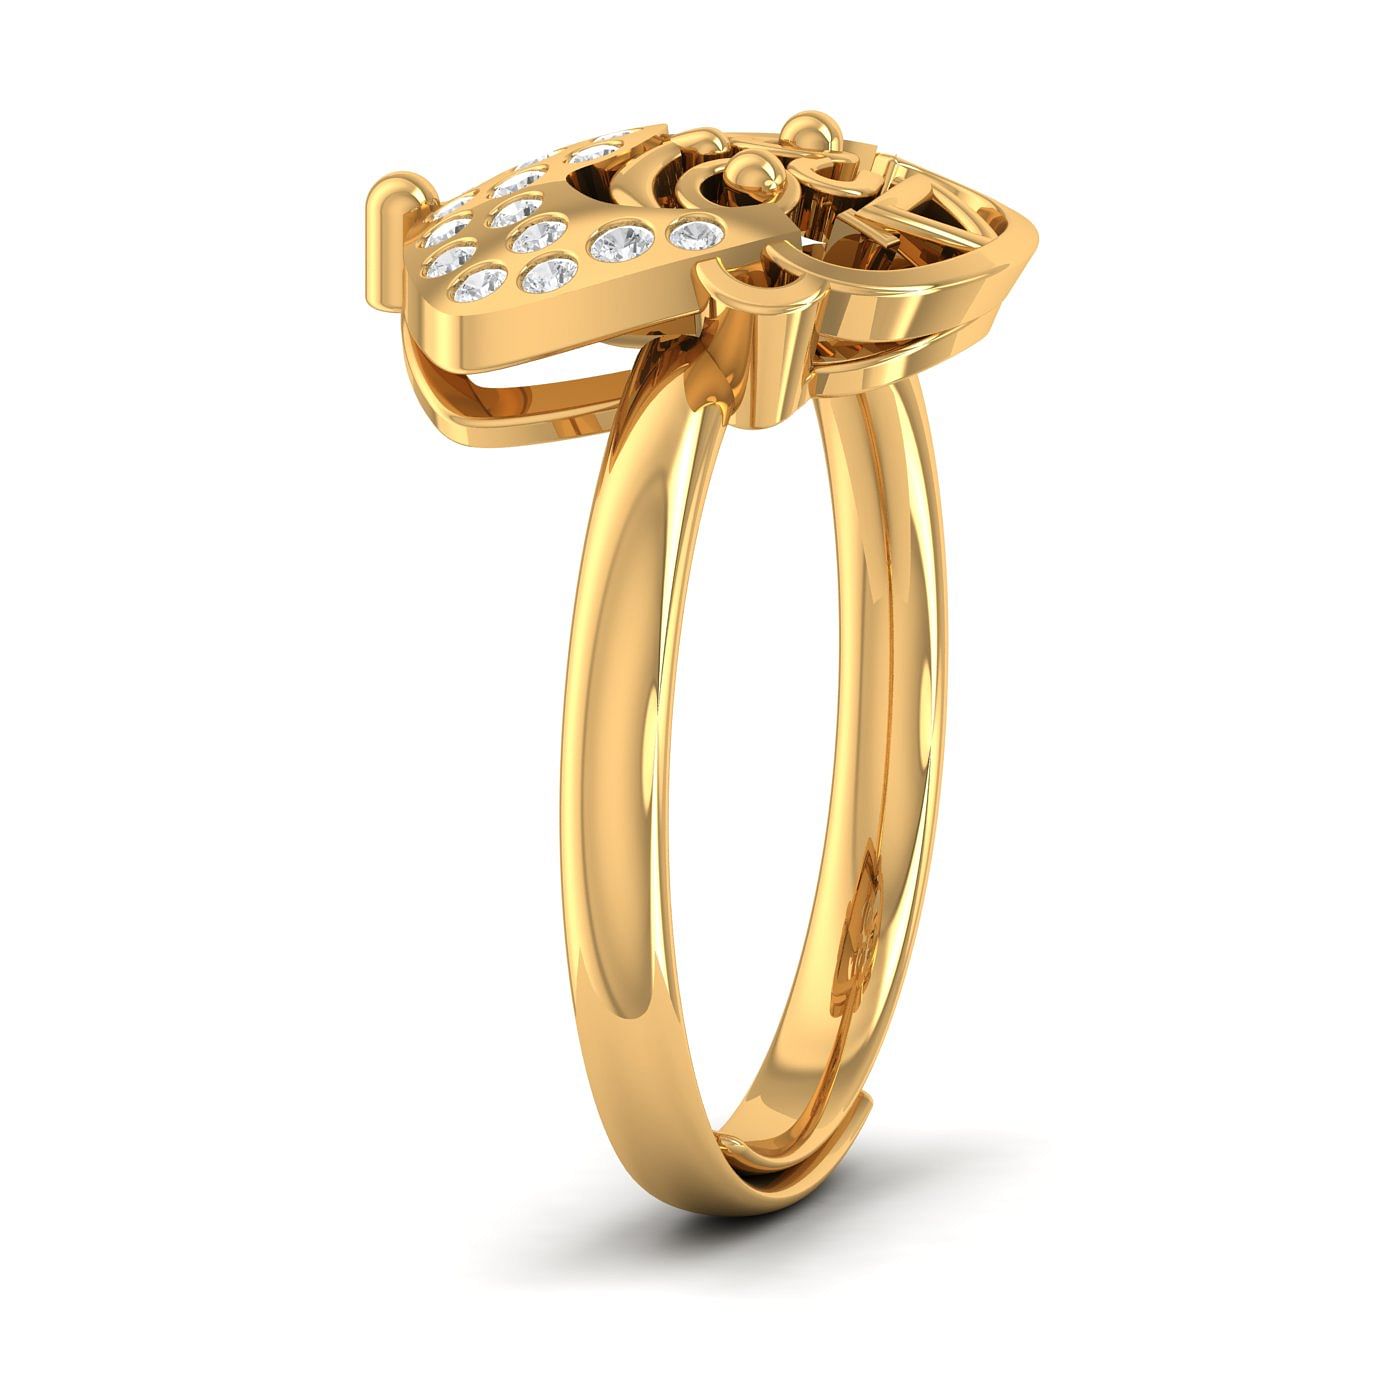 Kids Gold Finger Ring (KFR502)